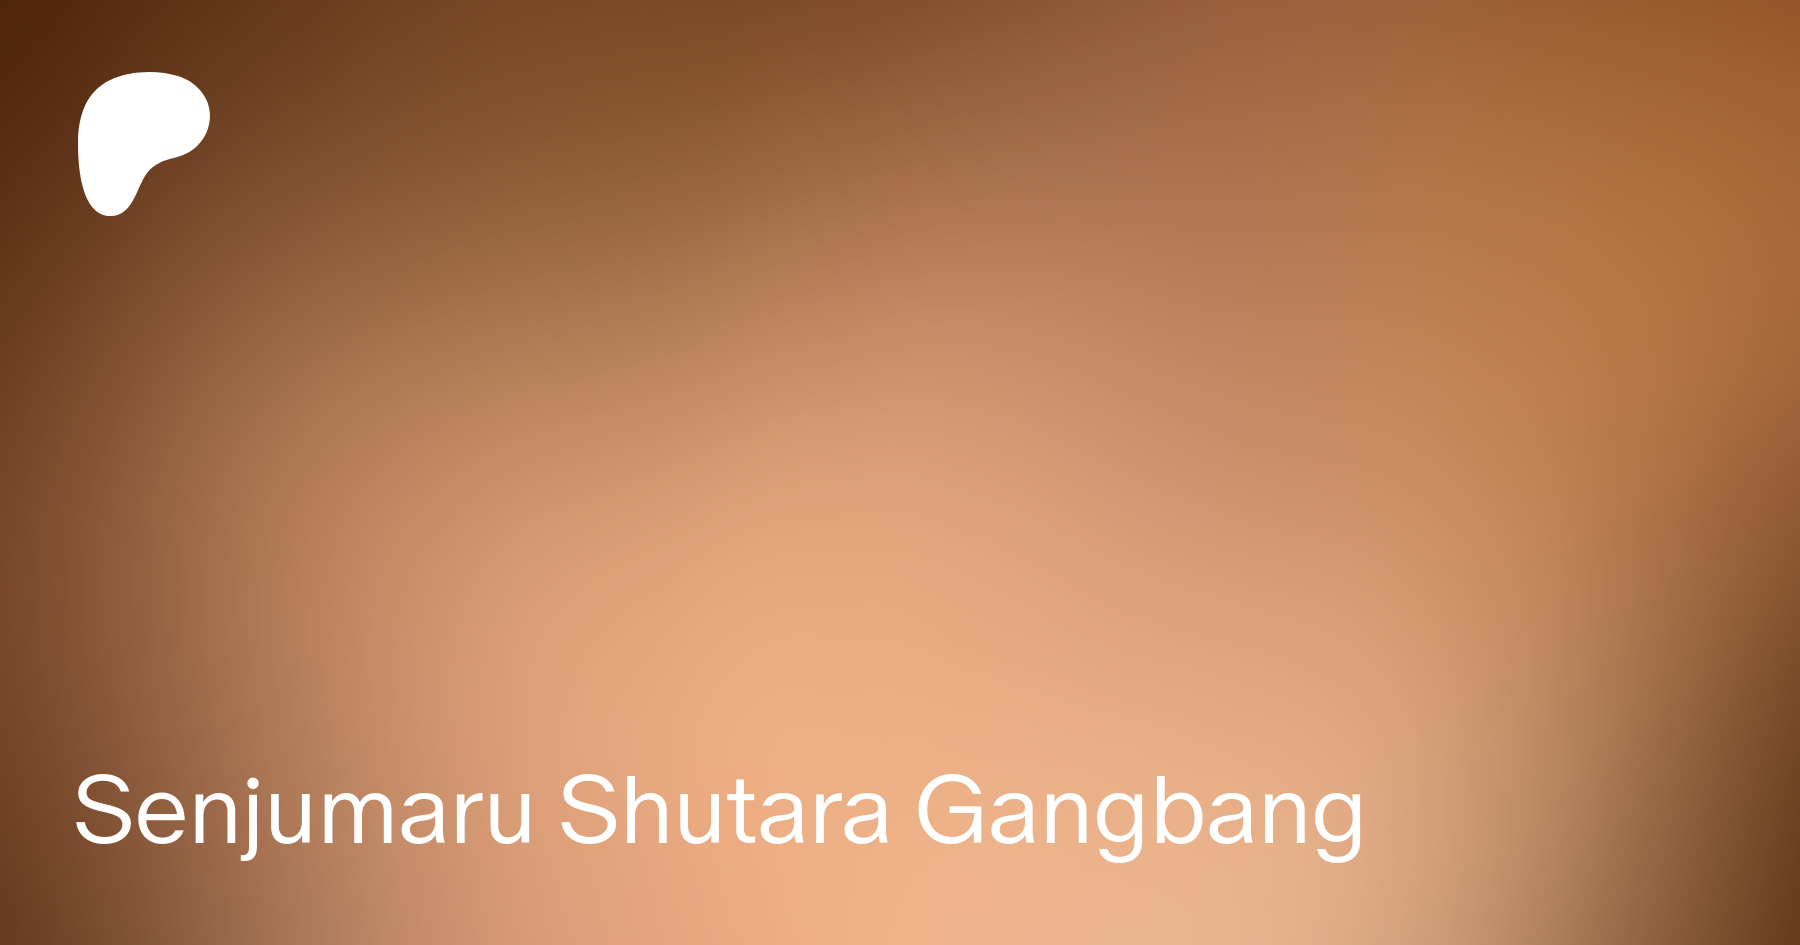 Senjumaru Shutara Gangbang | Patreon